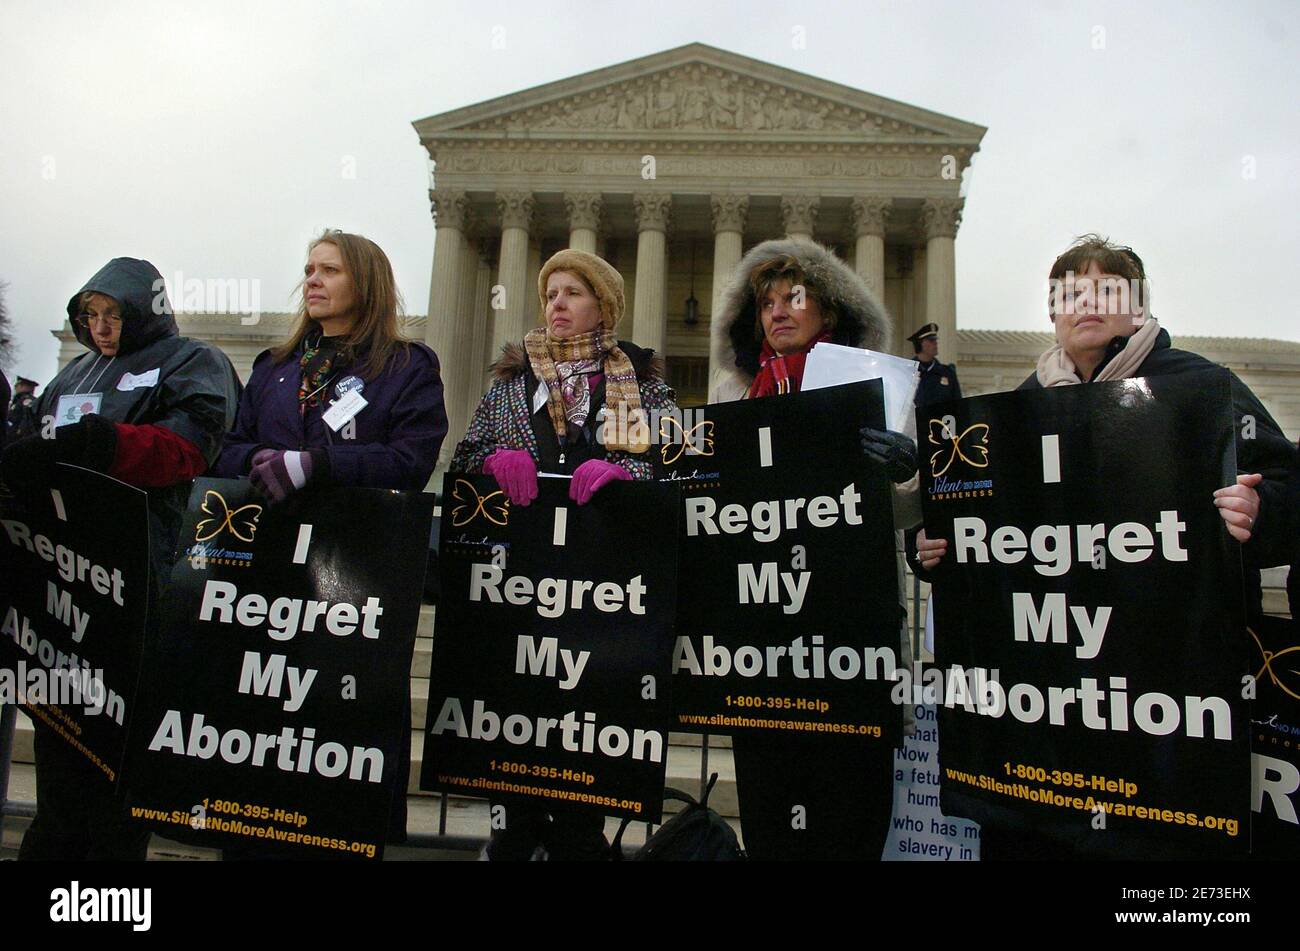 Pro-Life-Demonstranten hören Lautsprecher stehen sie vor dem US Supreme Court anlässlich den 35. Jahrestag des Roe Vs Wade, das Wahrzeichen Rechtsvorschriften das Recht zur Abtreibung, während einer Kundgebung in Washington 22. Januar 2008 erlaubt.      REUTERS/Mike Theiler (Vereinigte Staaten) Stockfoto